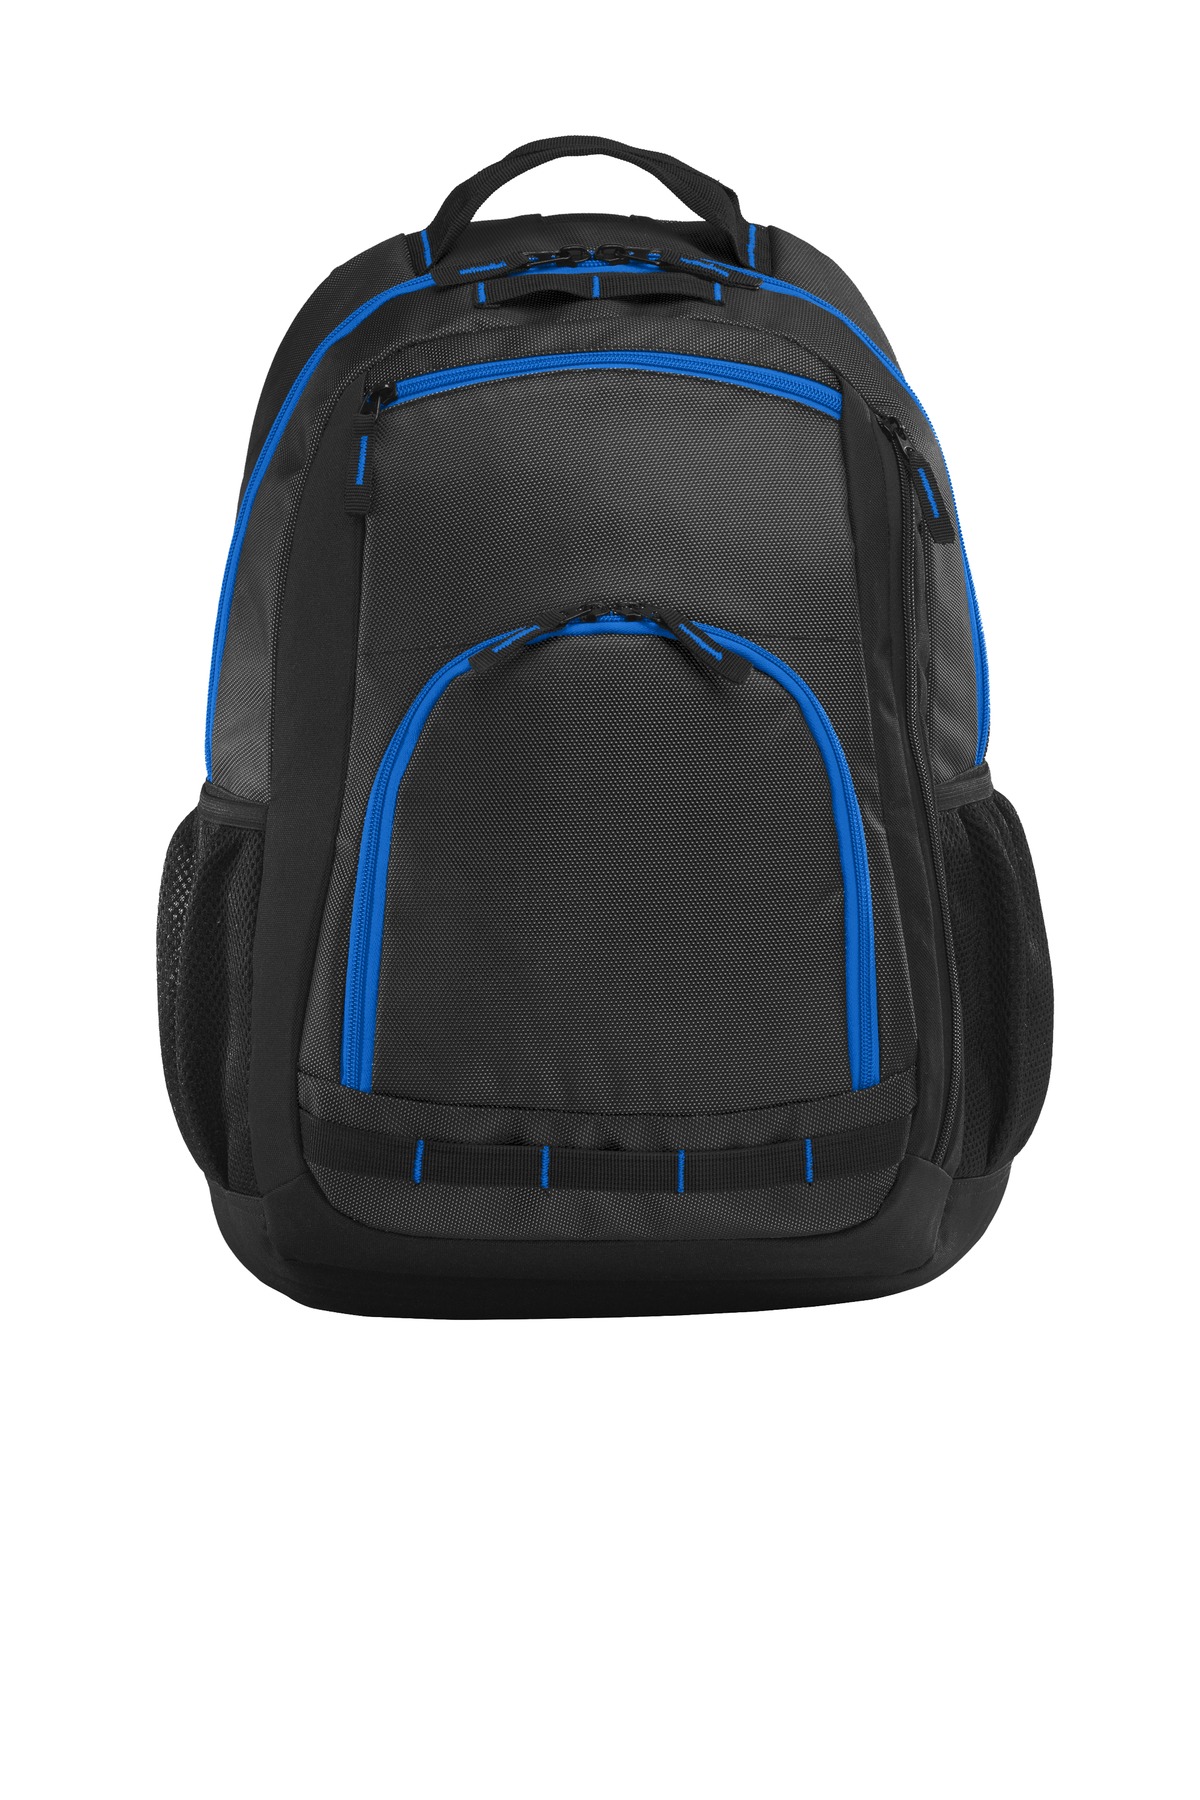 Port Authority ® Xtreme Backpack. BG207 - image 1 of 2